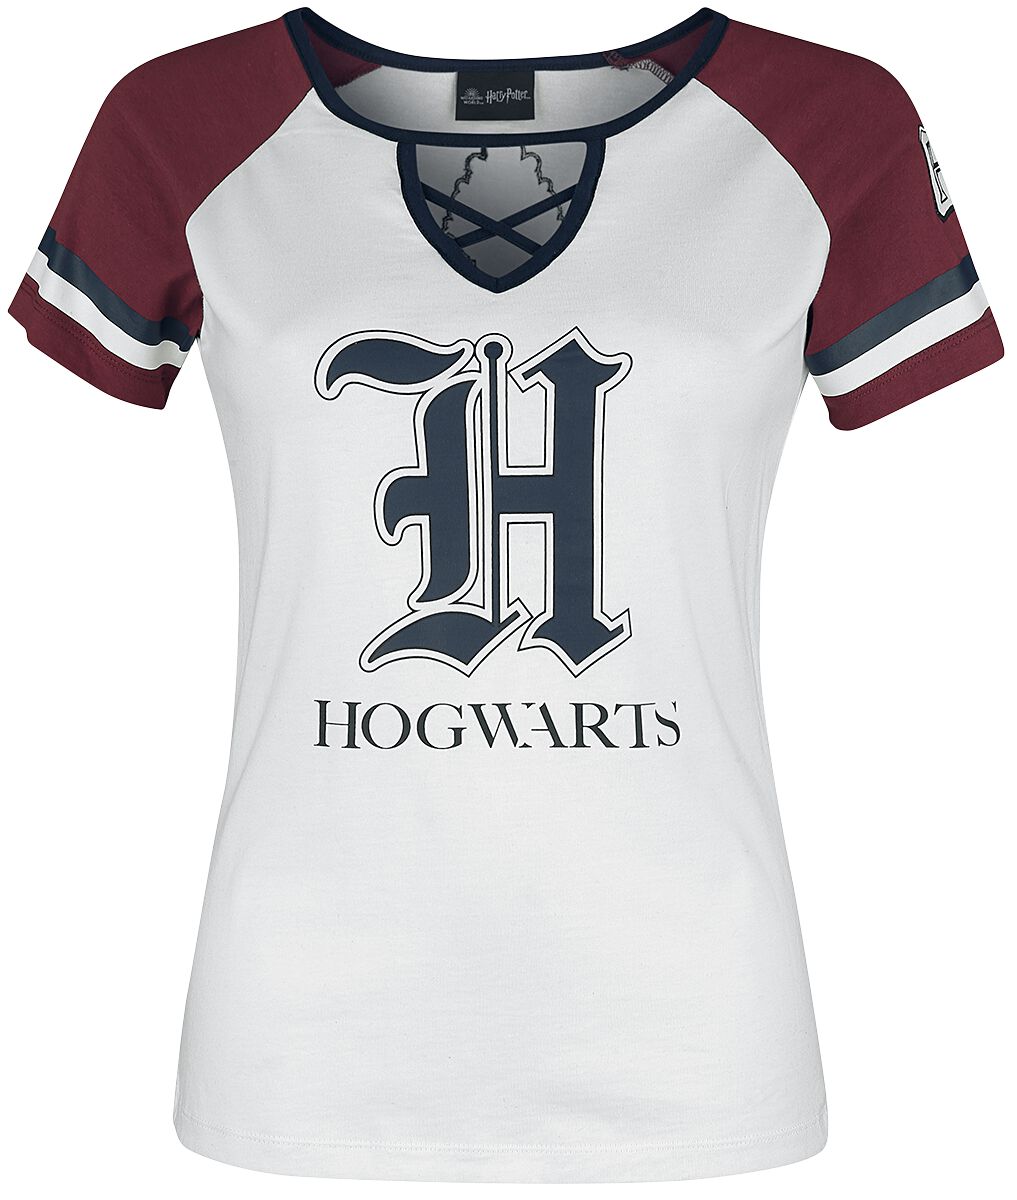 Harry Potter Hogwarts T Shirt weiß dunkelrot  - Onlineshop EMP